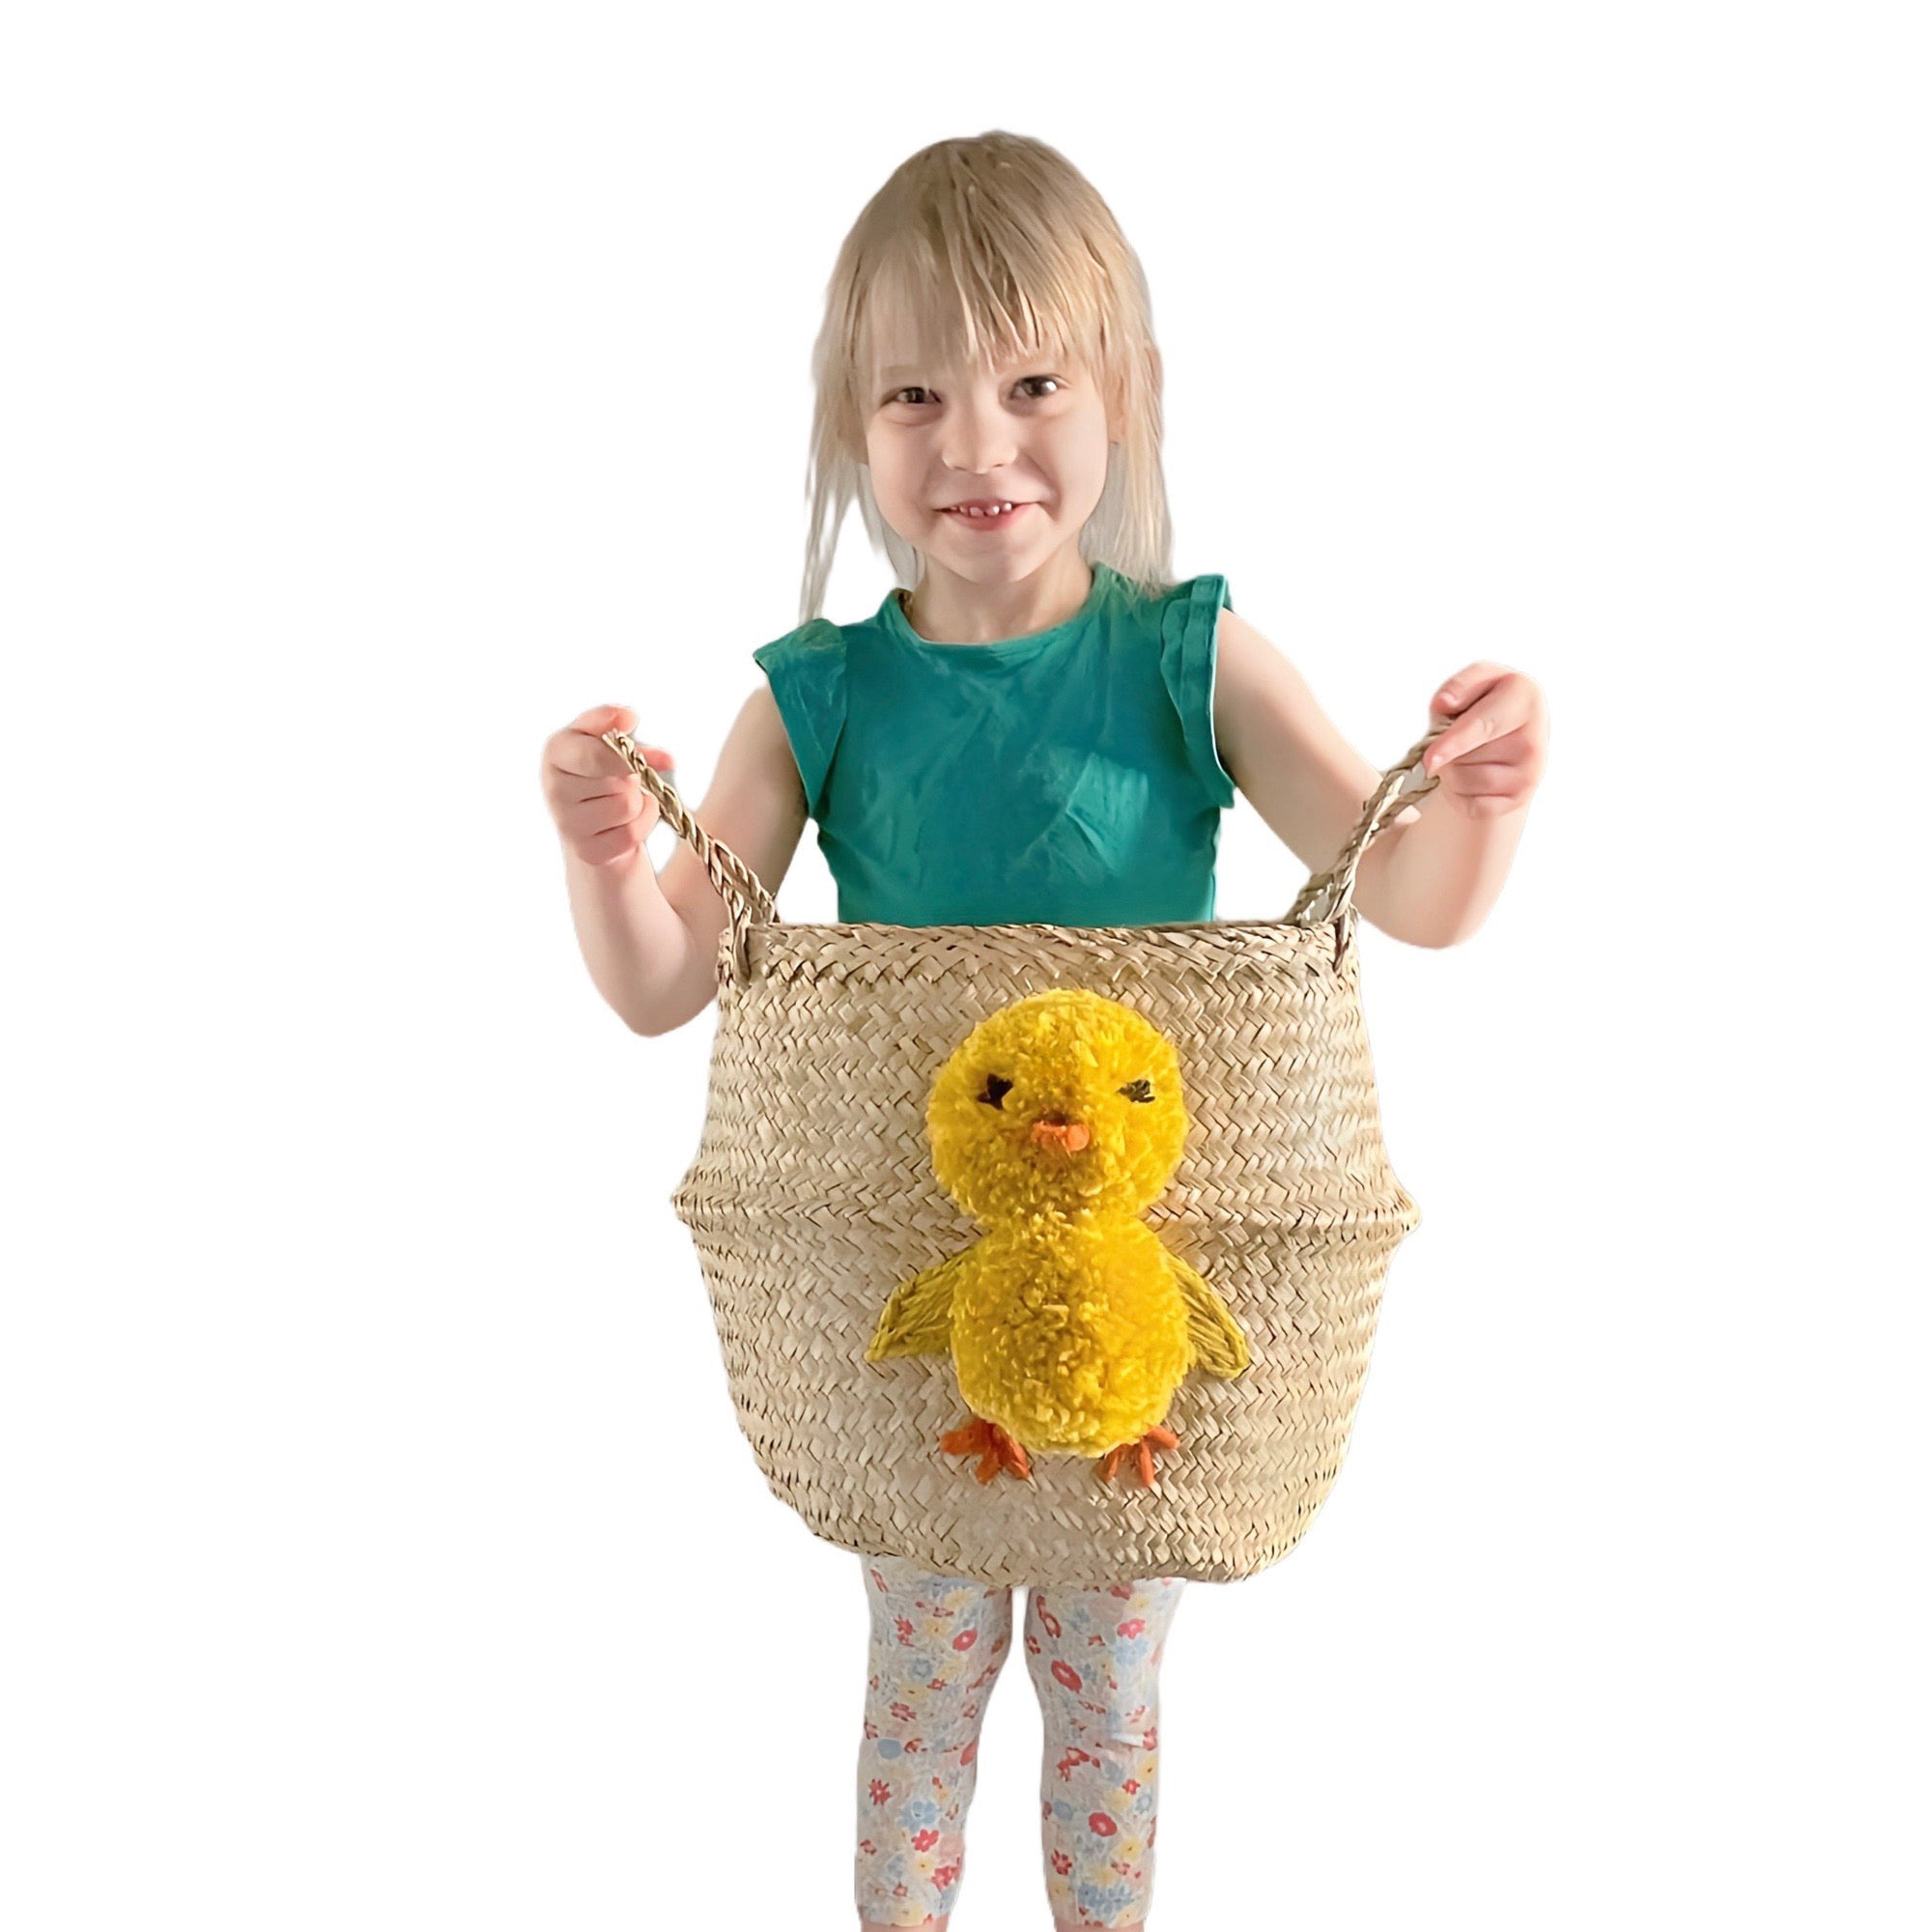 Easter Chick Basket - Medium